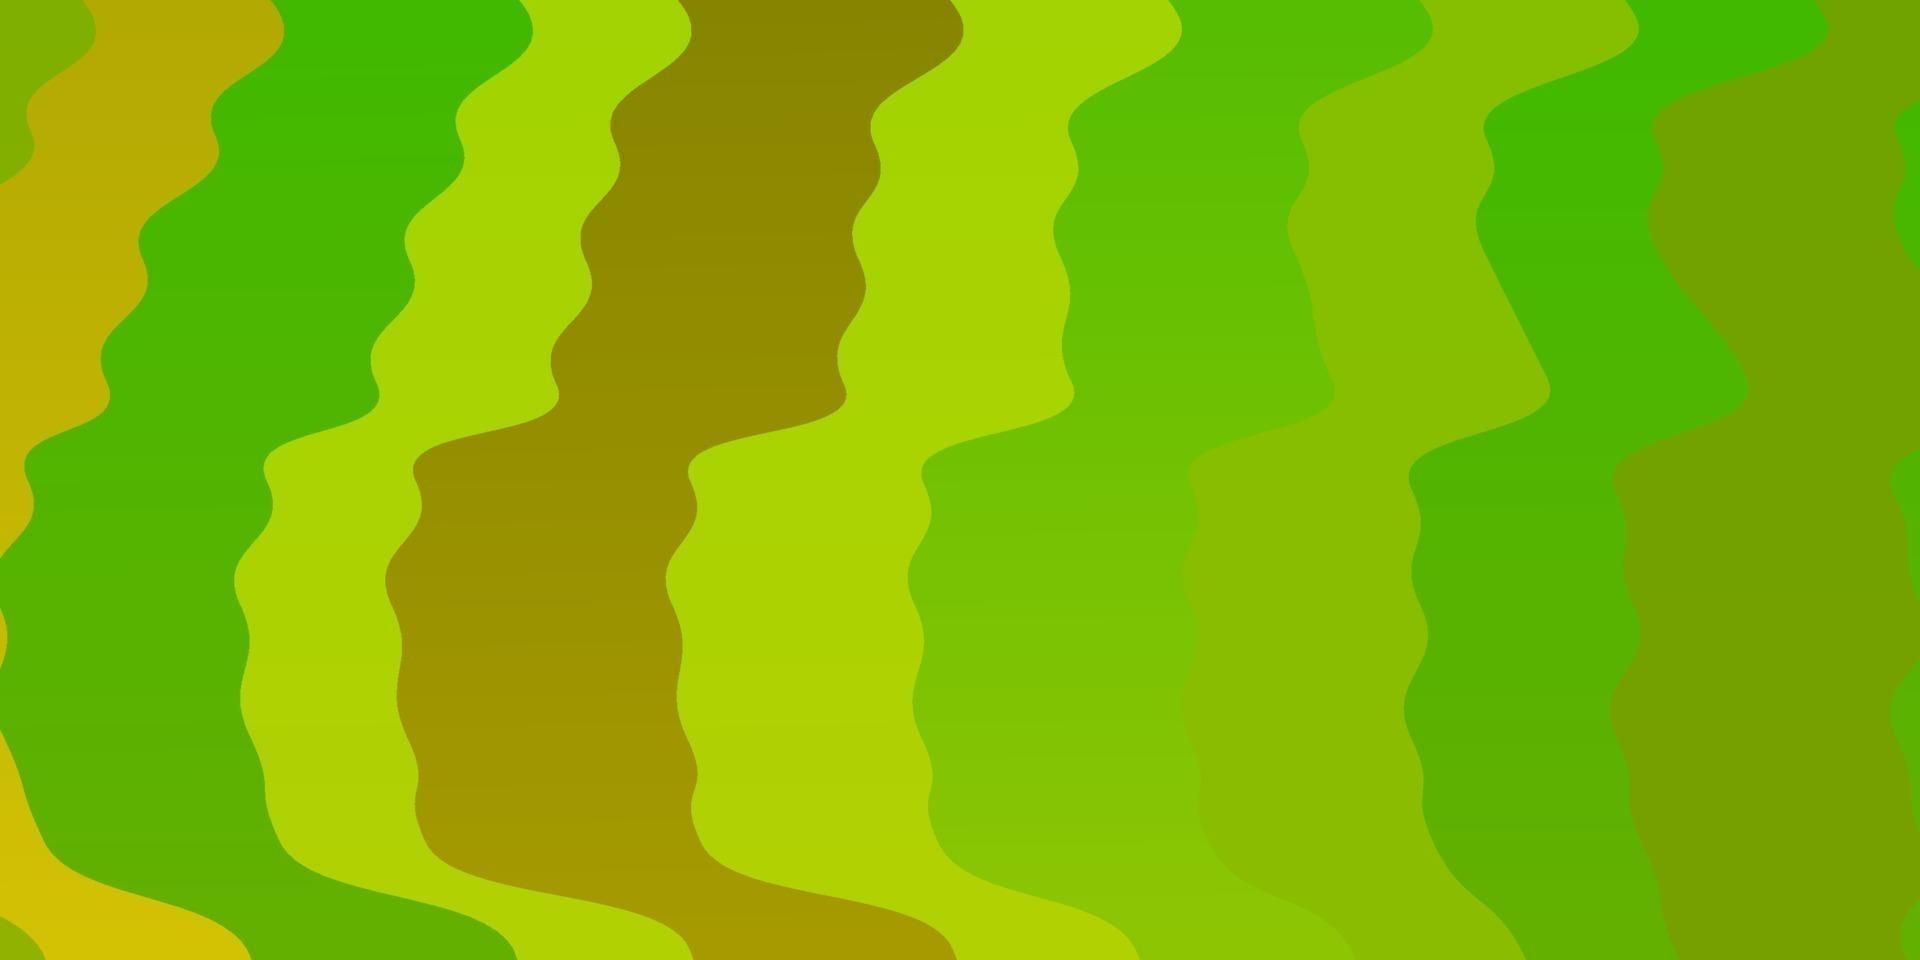 toile de fond de vecteur vert clair, jaune avec des courbes.